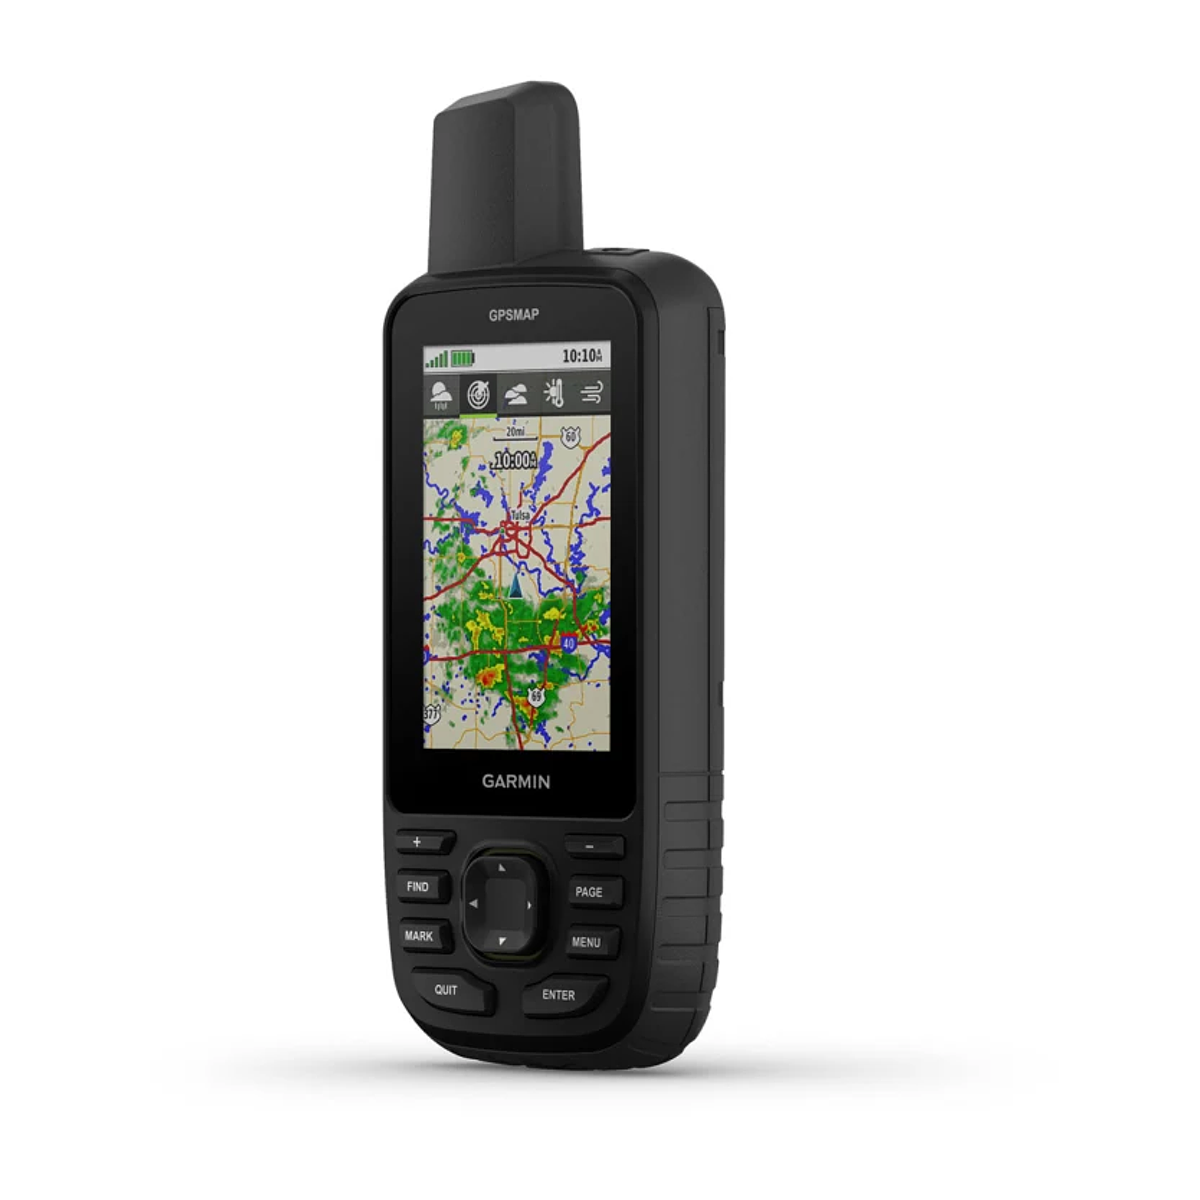  Garmin eTrex Serie navegador GPS, Negro : Electrónica